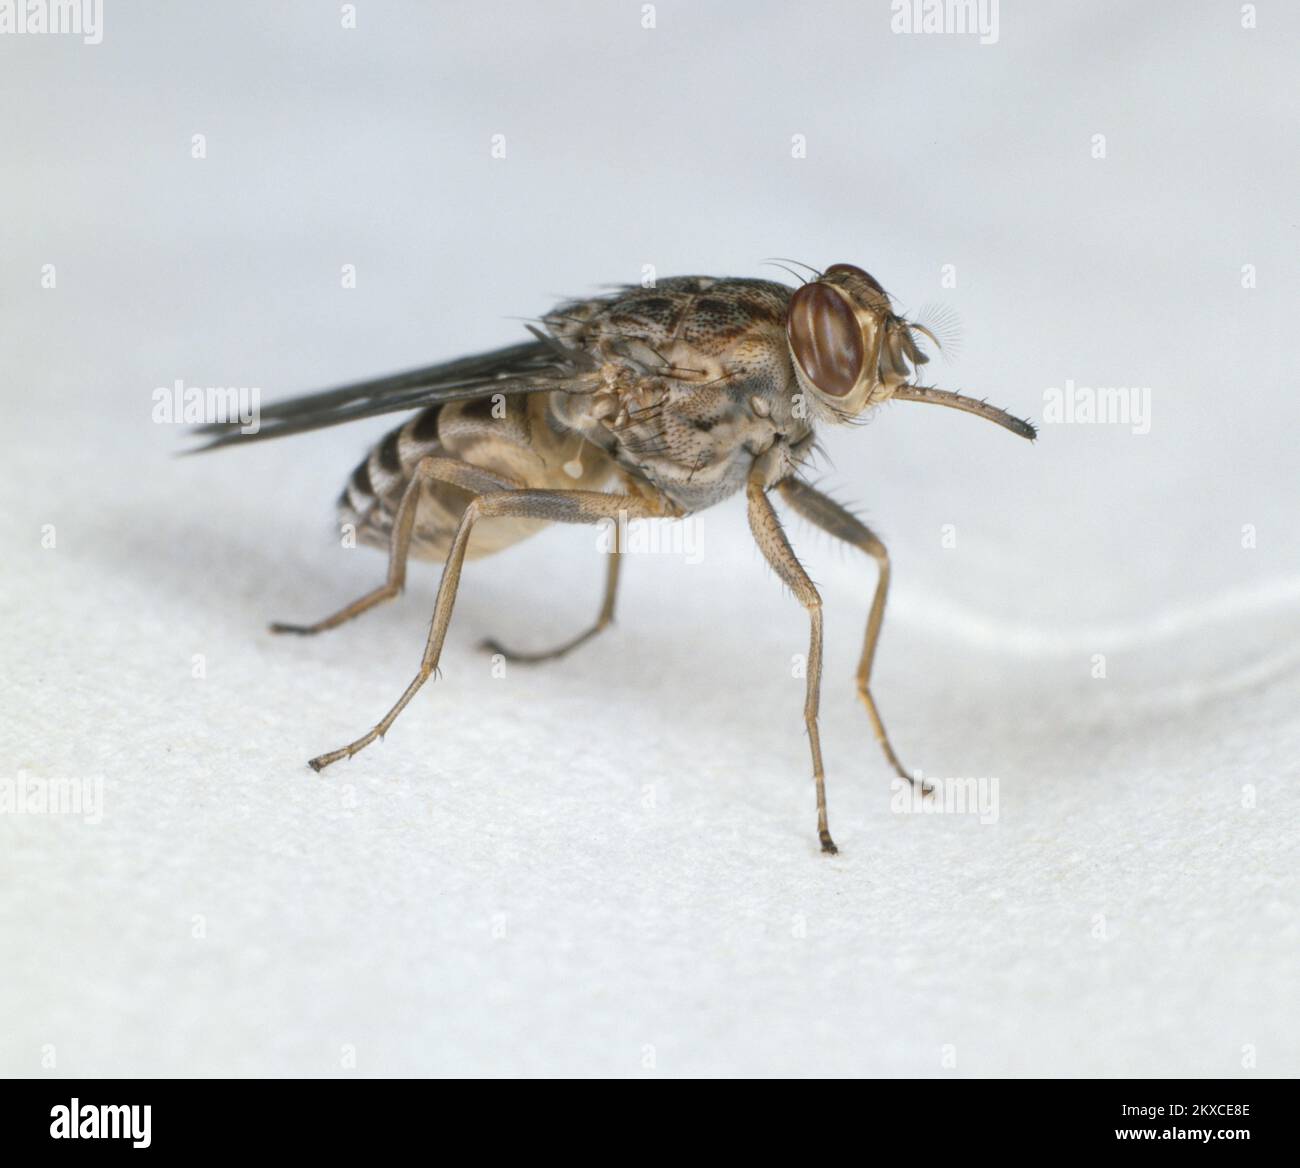 Tsetse Fliege (Glossiina morsitans) Vektor von Trypanosoma brucei rhodesiense, die Schlafkrankheit und Rinderpest verursacht Stockfoto